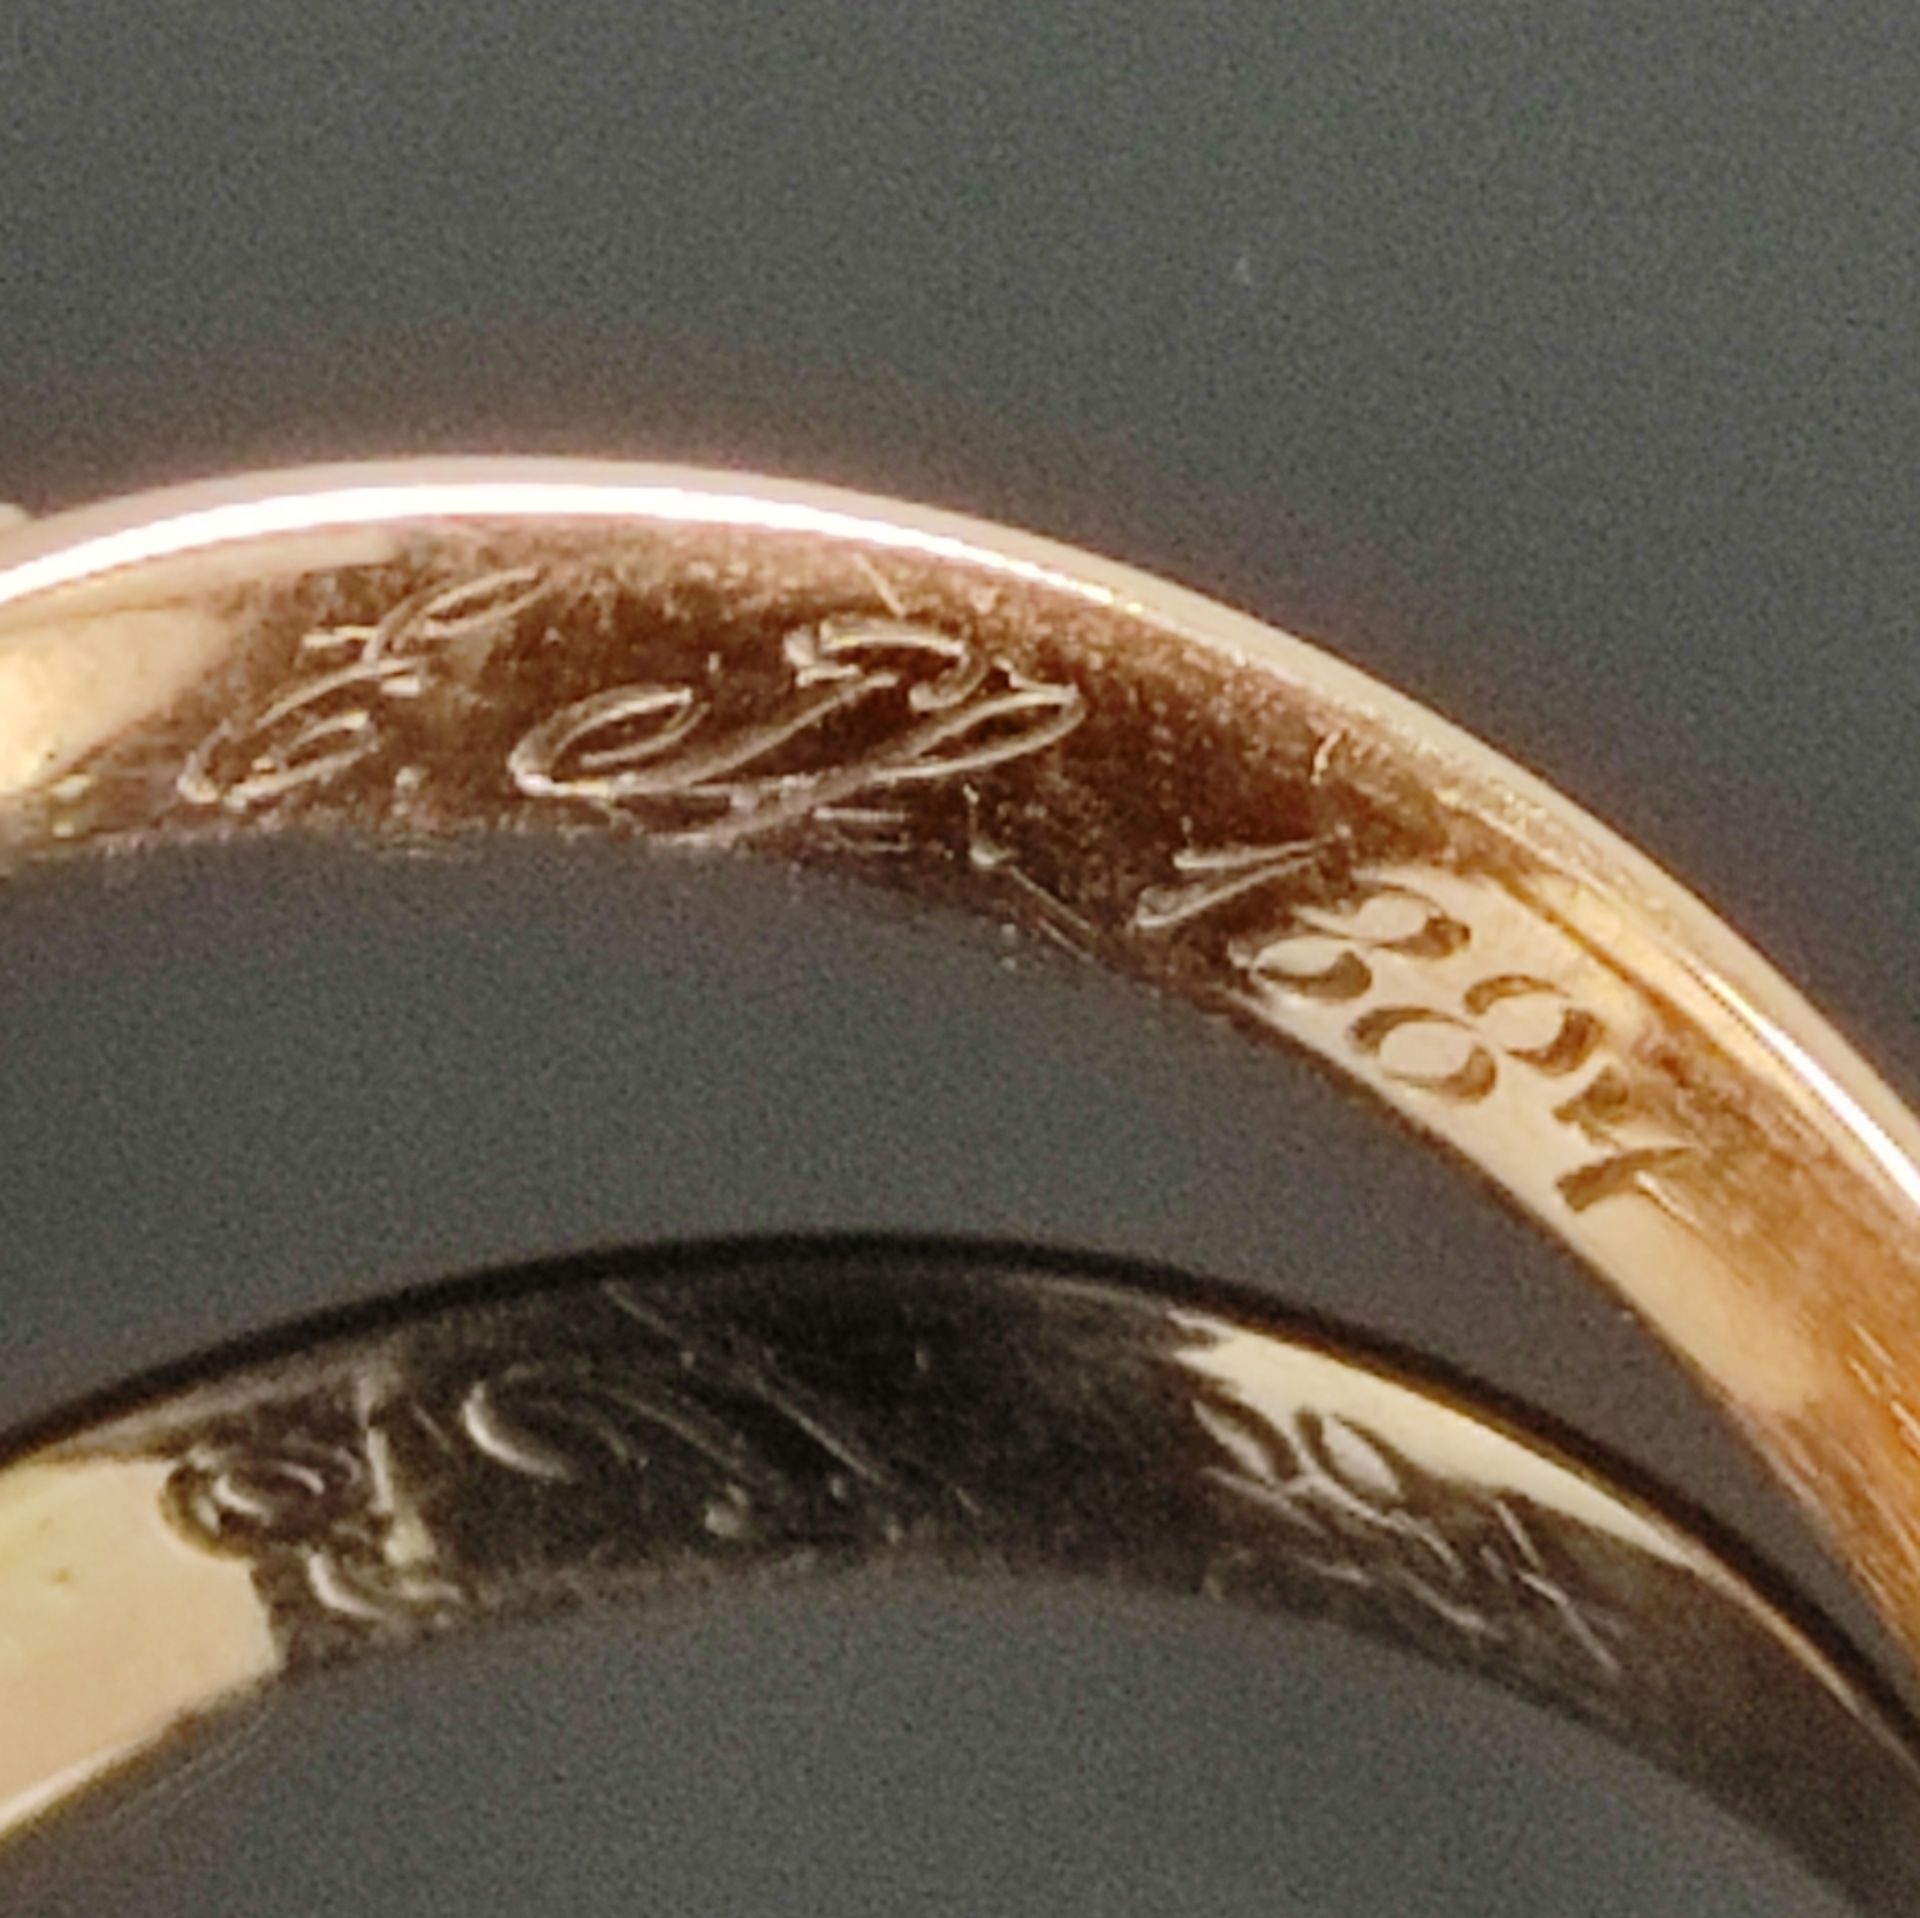 Antiker Zitrin-Ring, 19. Jahrhundert, 585/14K Gelbgold (getestet), Gesamtgewicht 4,74g, mittig oval - Bild 3 aus 3